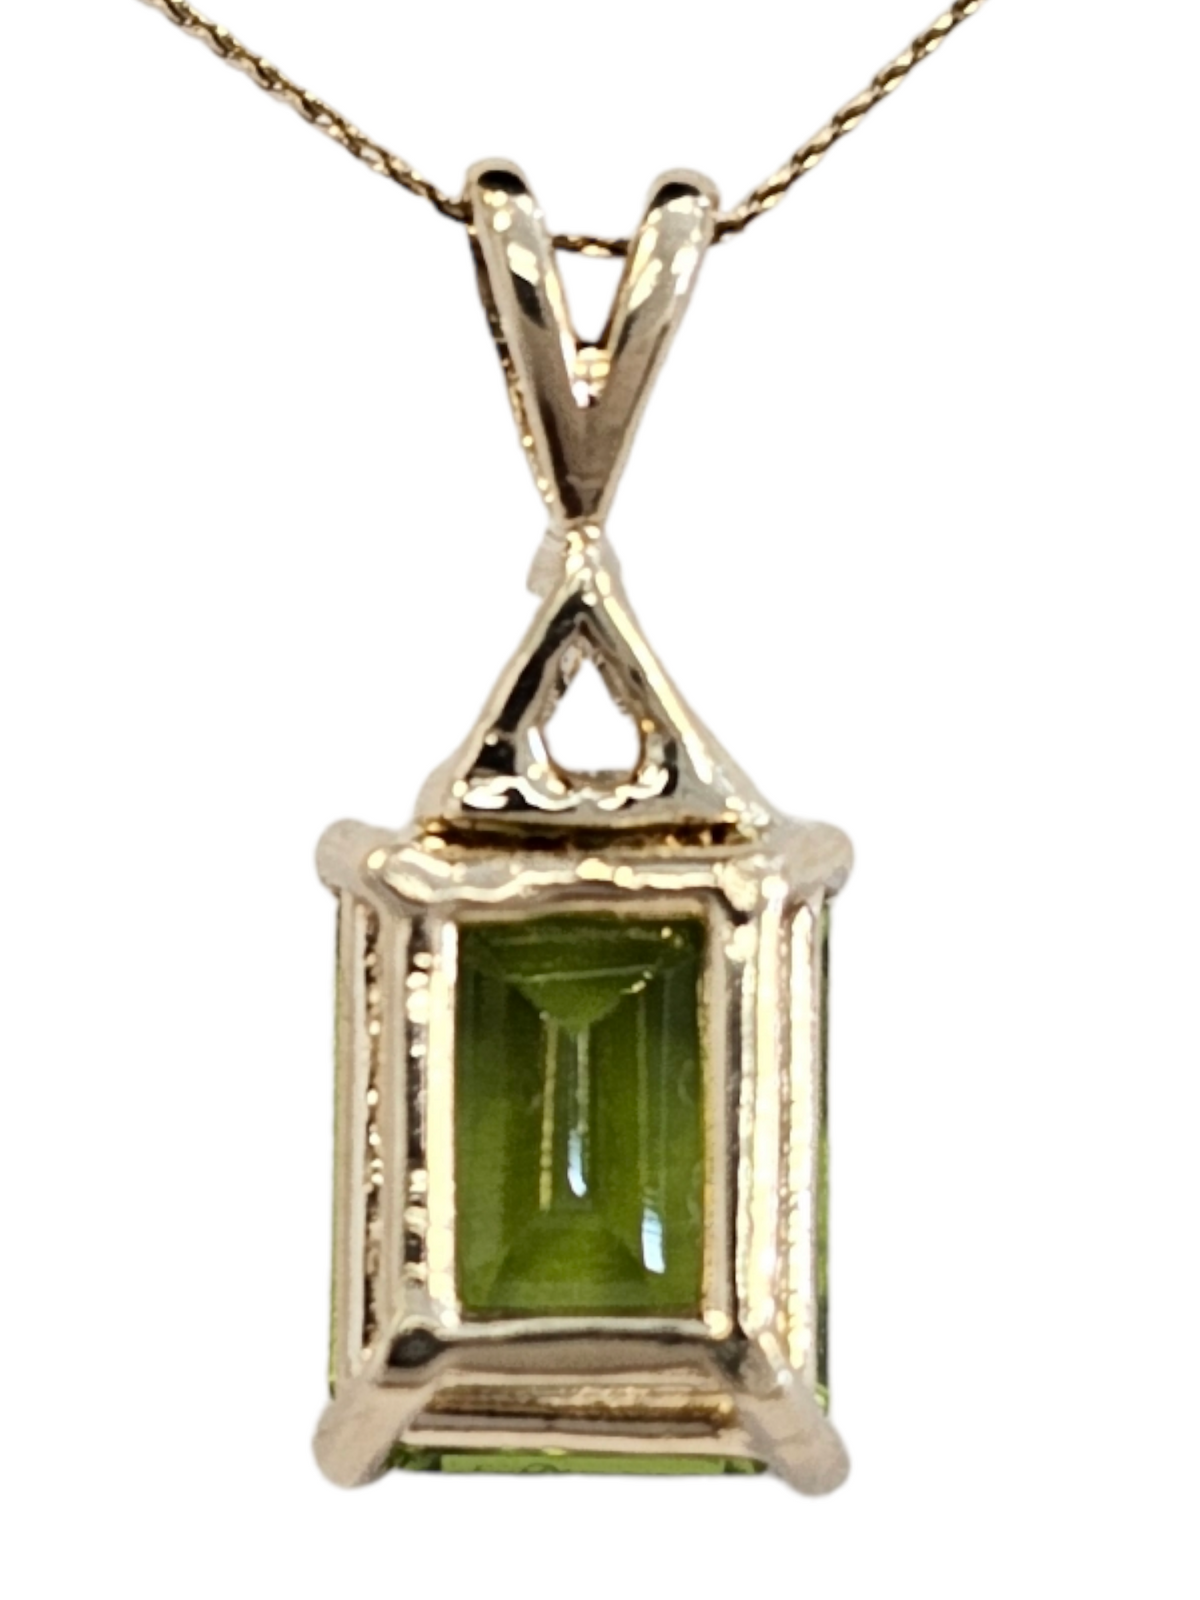 Peridot (emerald cut) and Diamond (trillion cut) Pendant, 14kt Yellow Gold